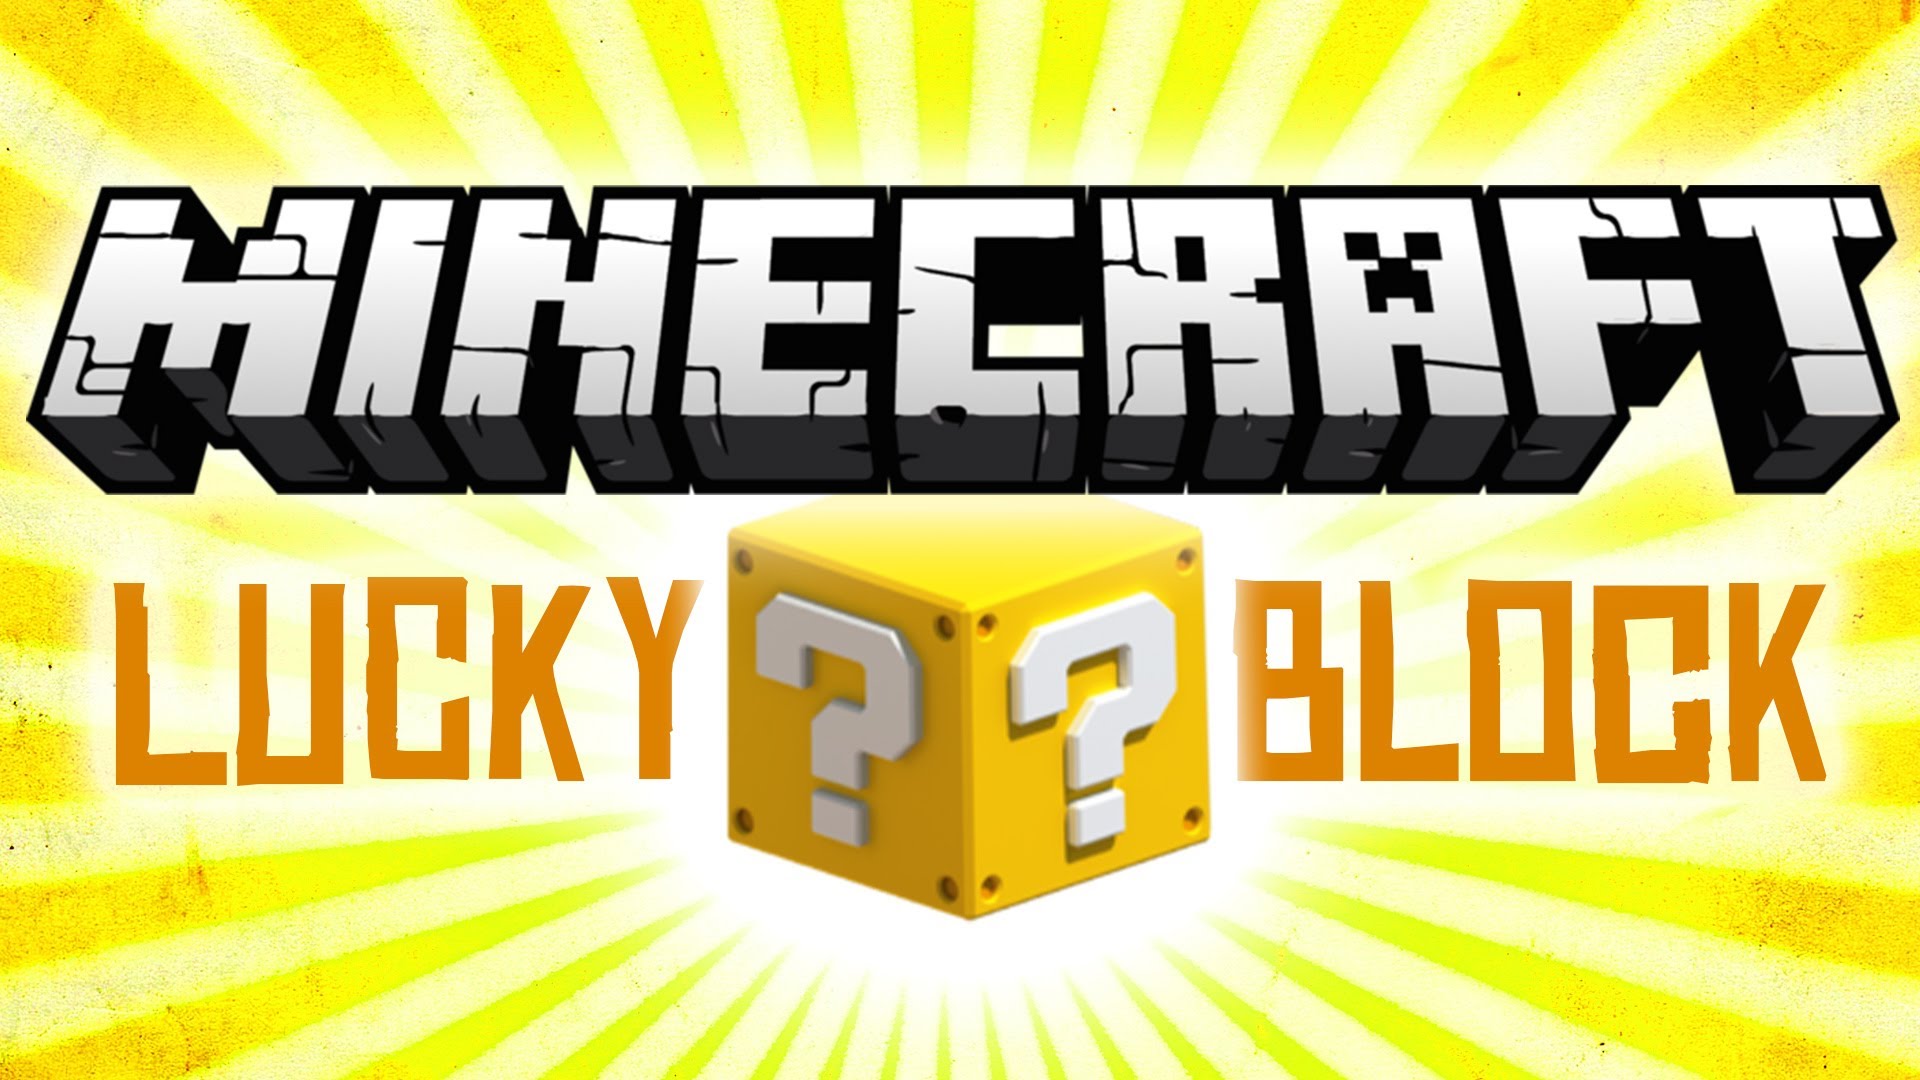 lucky block mod minecraft pc